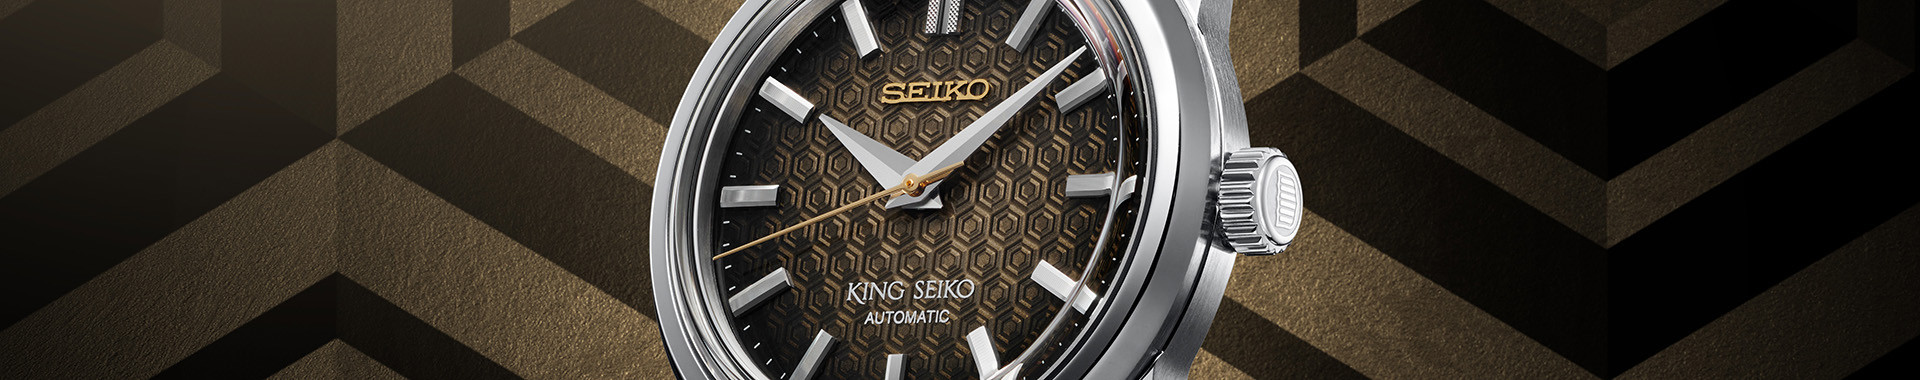 King Seiko Herren - Seiko Boutique